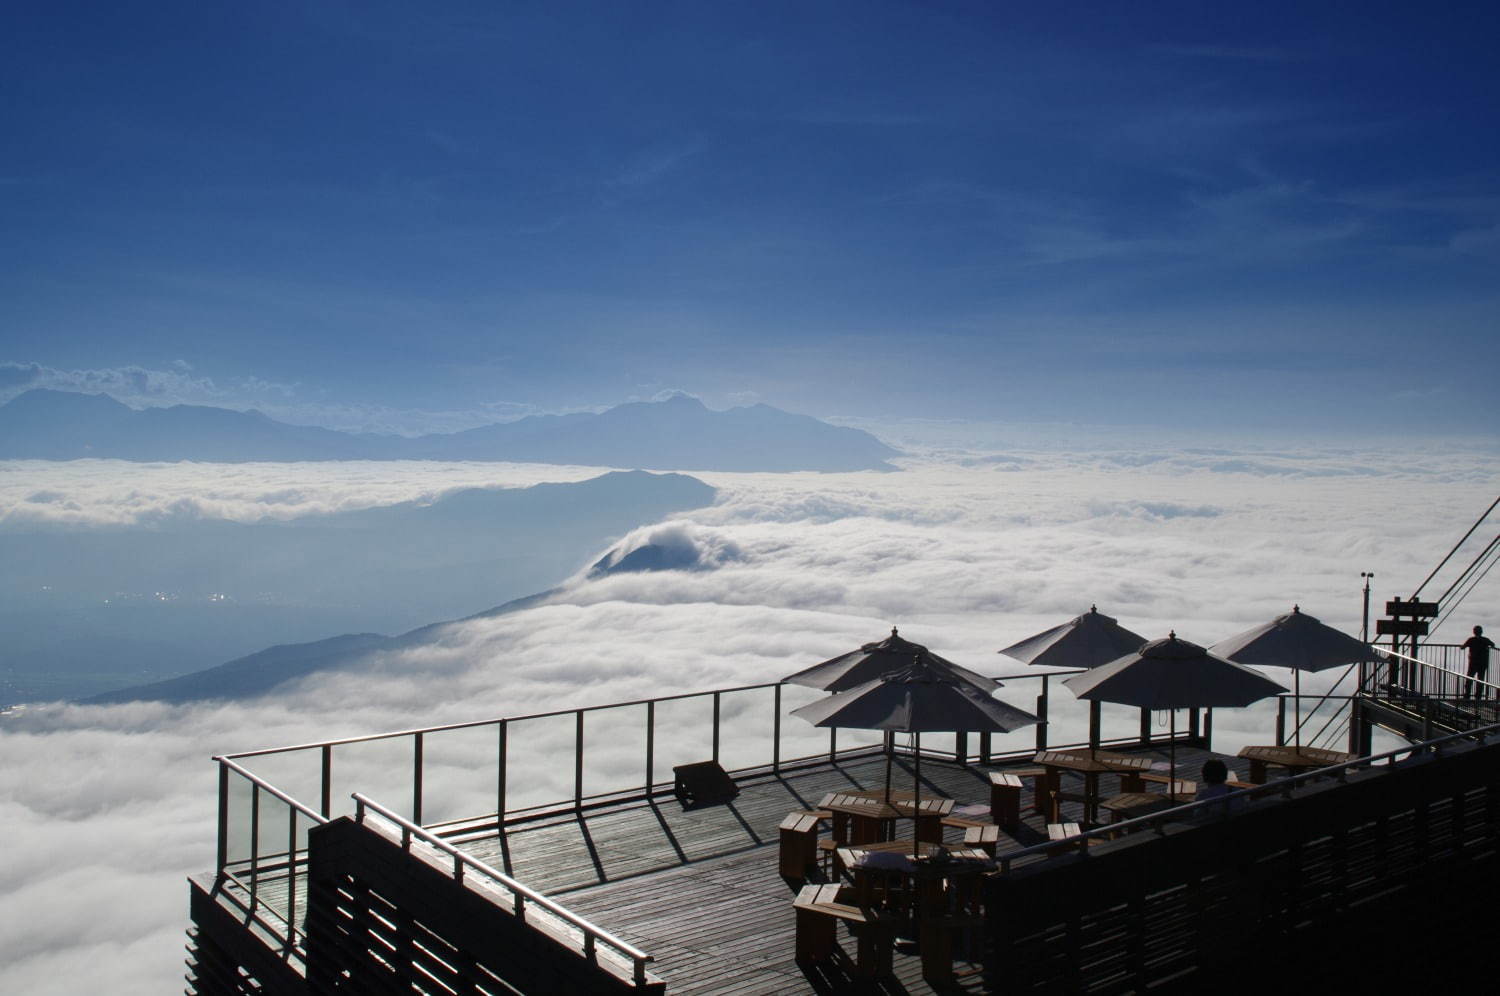 写真21 46 雲の上のカフェレストラン ソラテラス カフェ 長野 竜王に 標高1 770m地点で星空も ファッションプレス